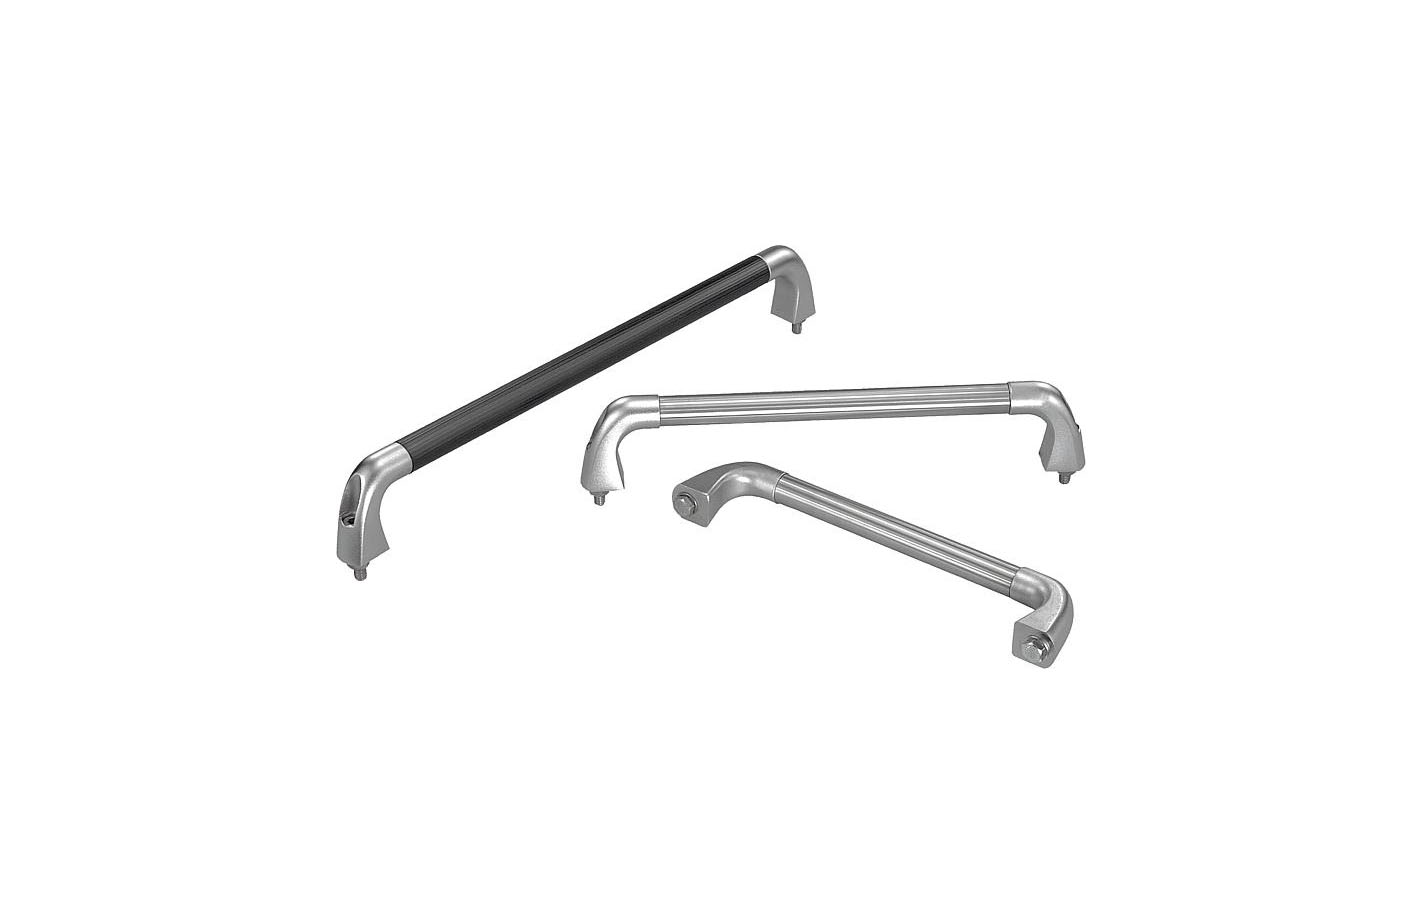 K0227 Tubular handles stainless steel